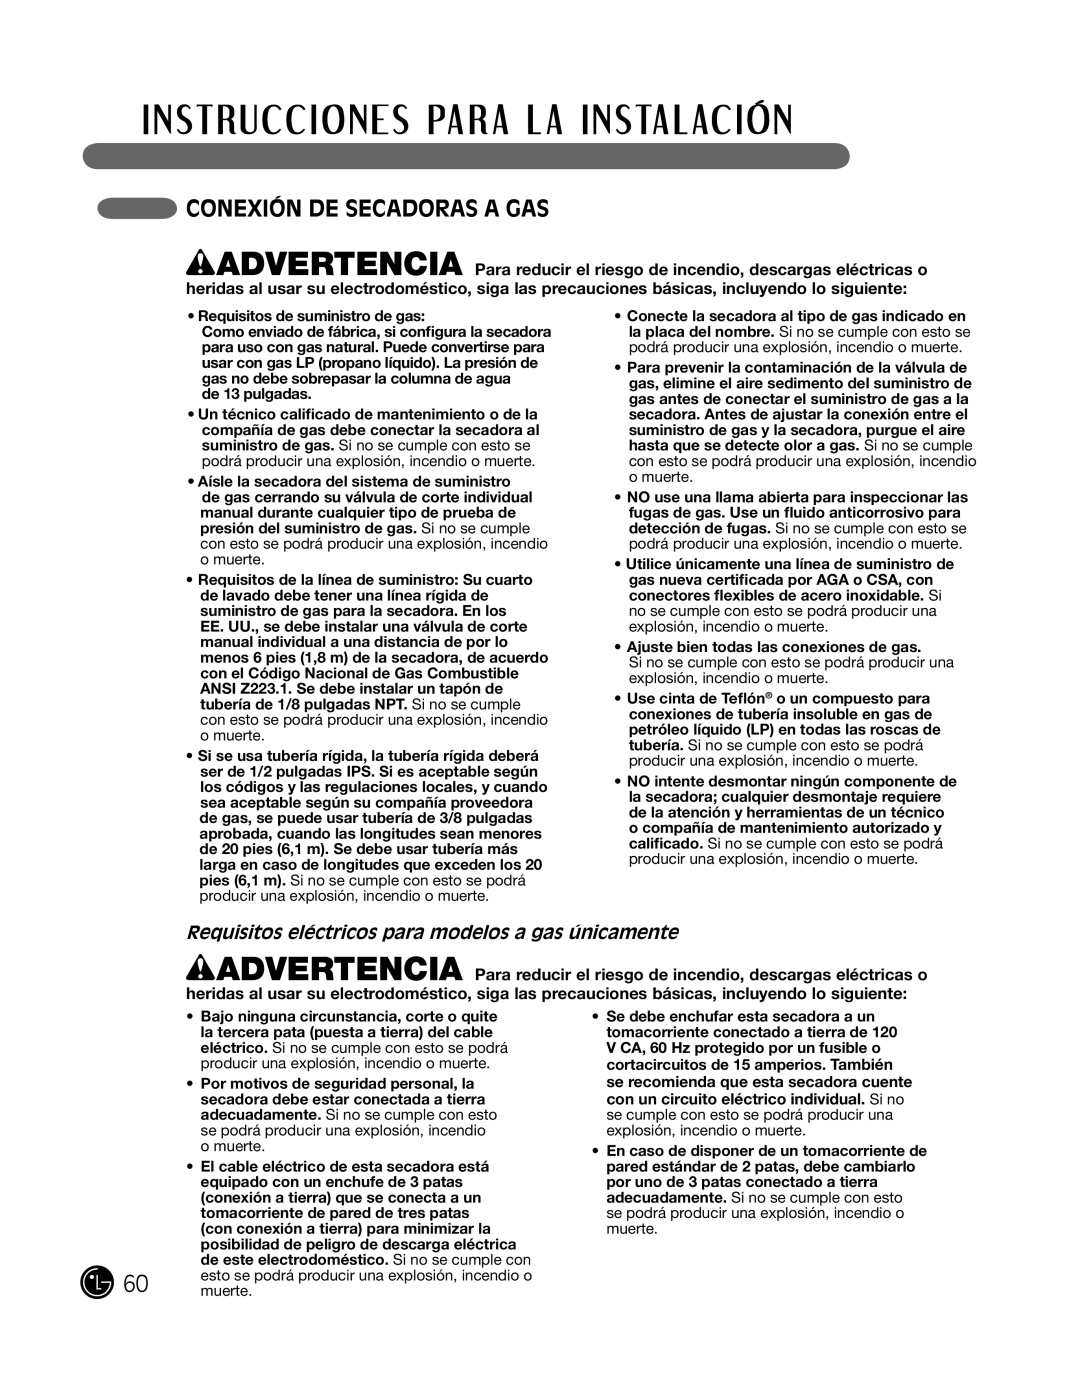 LG Electronics P154 manual coneXiÓn de SecadoraS a gaS, requisitos eléctricos para modelos a gas únicamente 